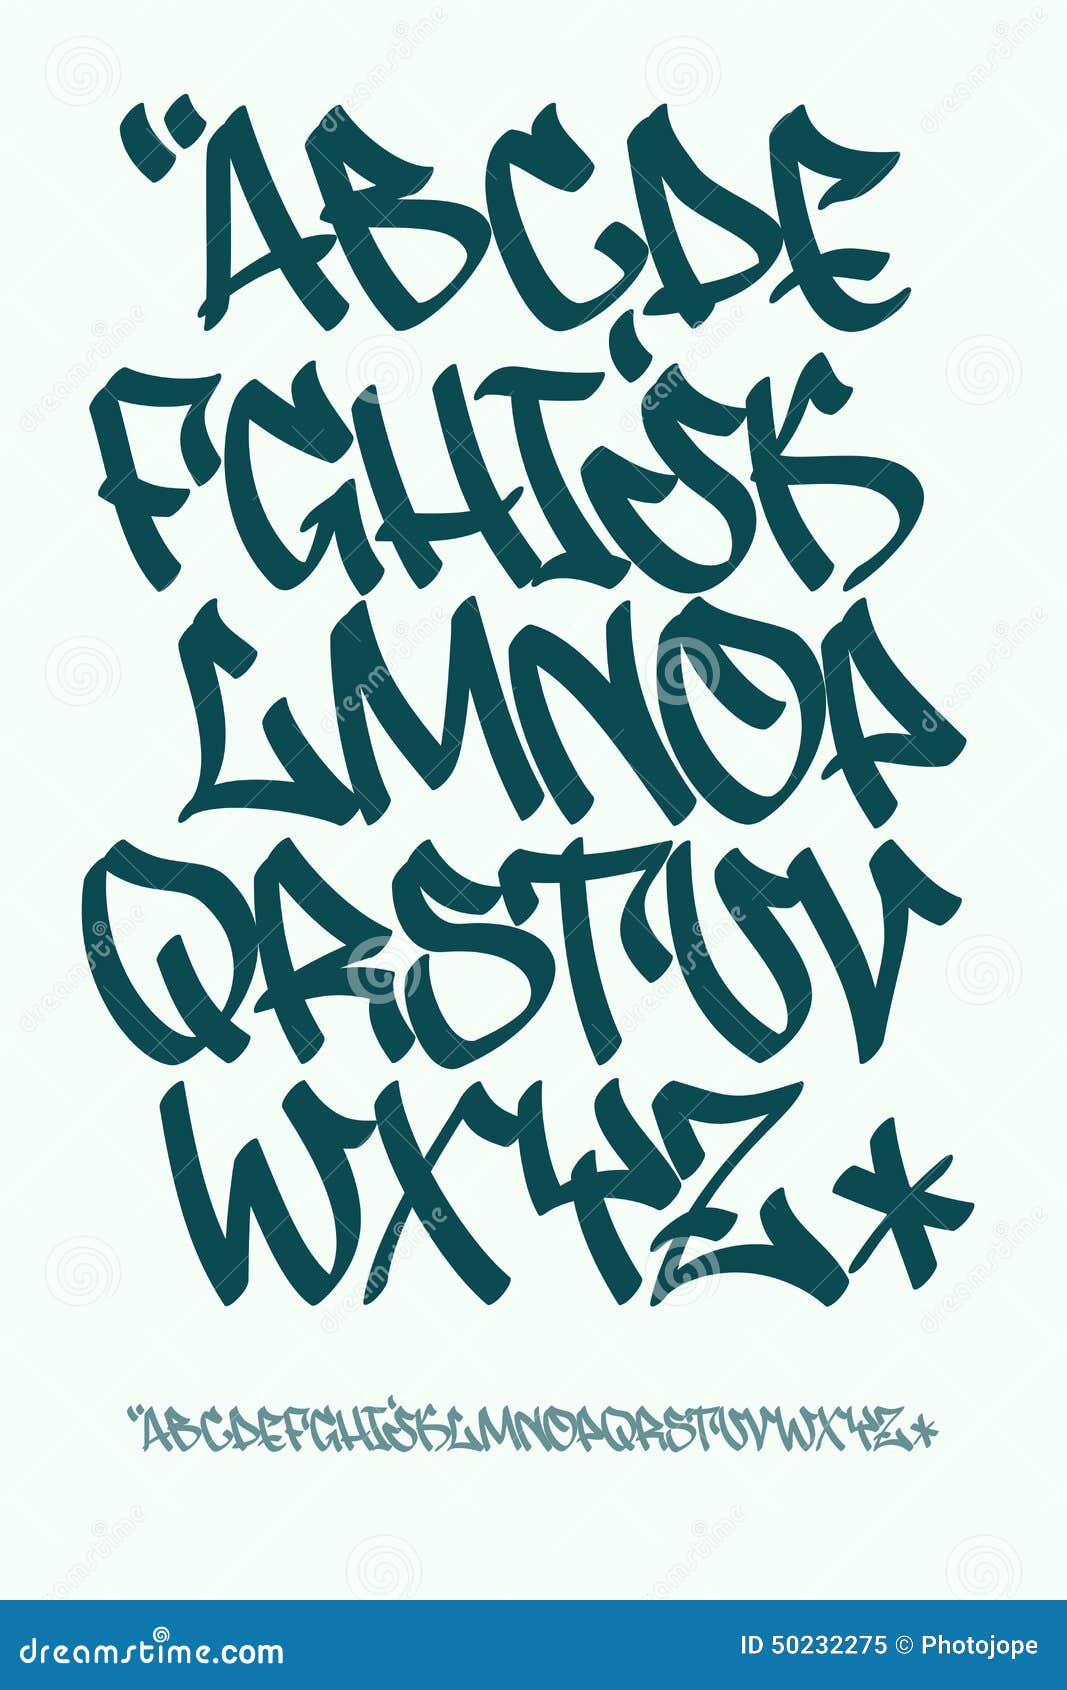 Graffiti Font - Hand Written - Vector Alphabet Stock Vector - Image